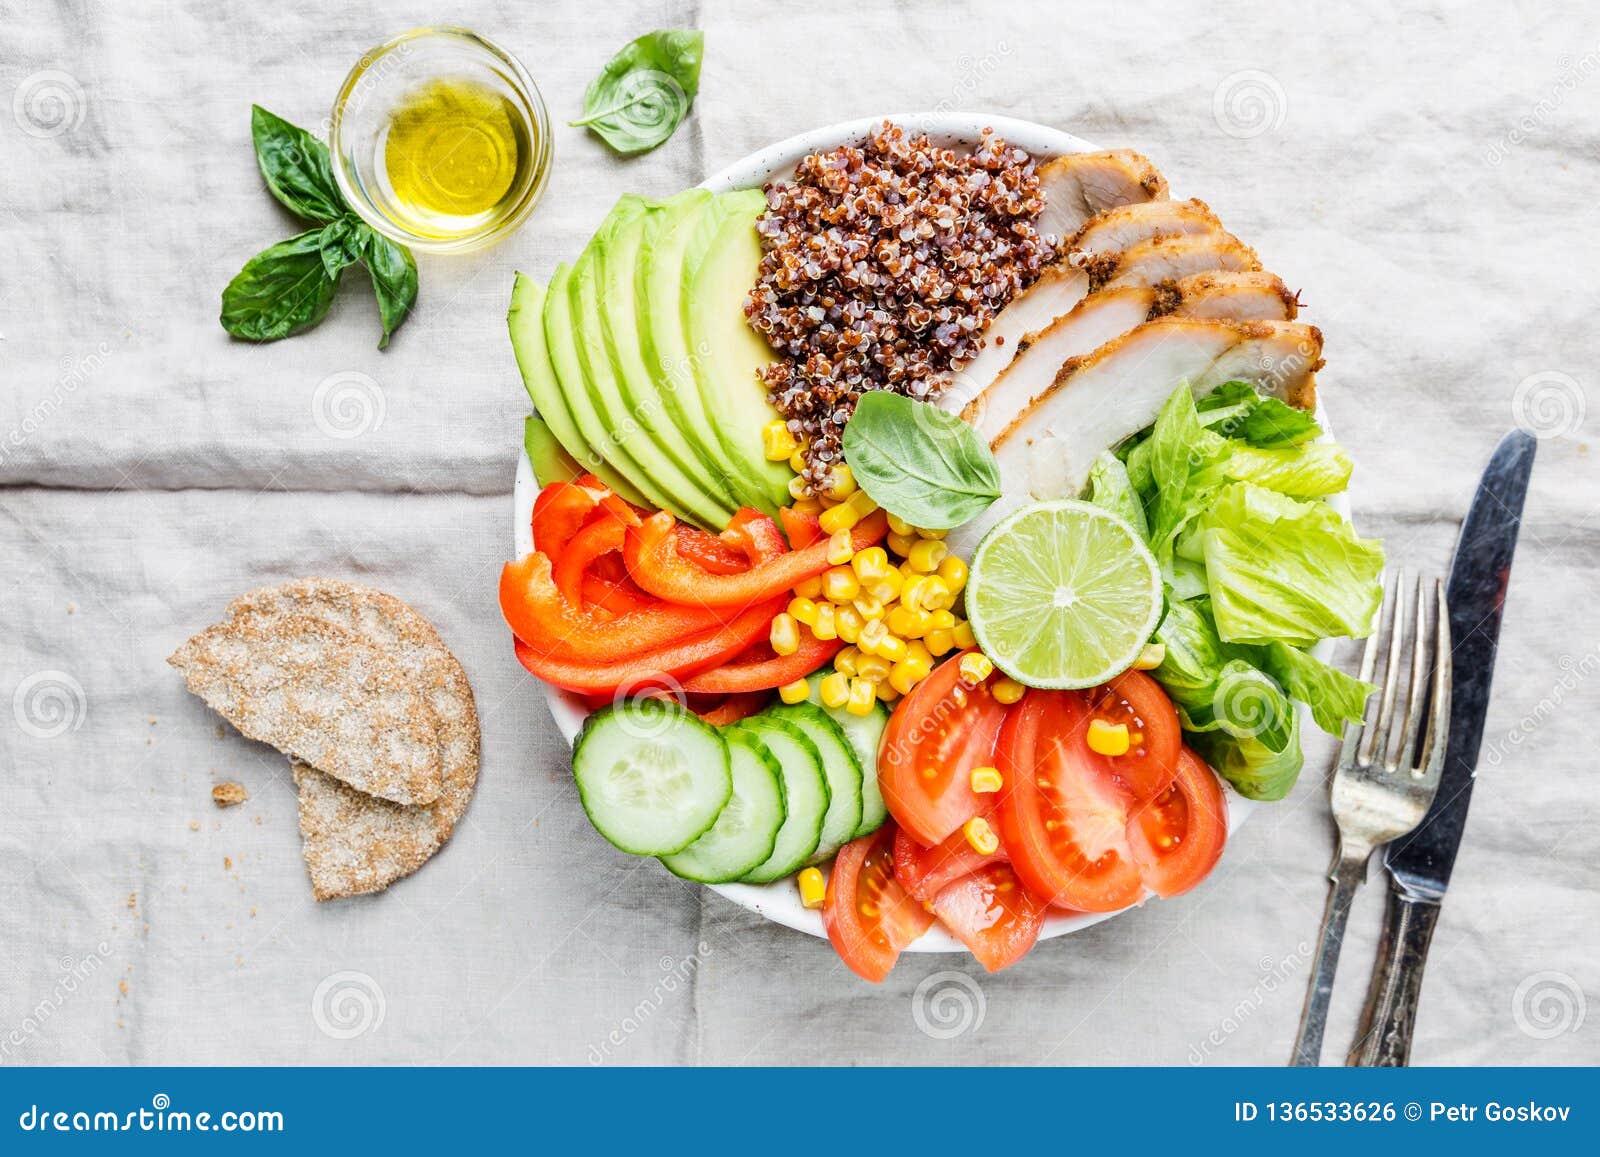 Healthy salad bowl stock photo. Image of menu, natural - 136533626